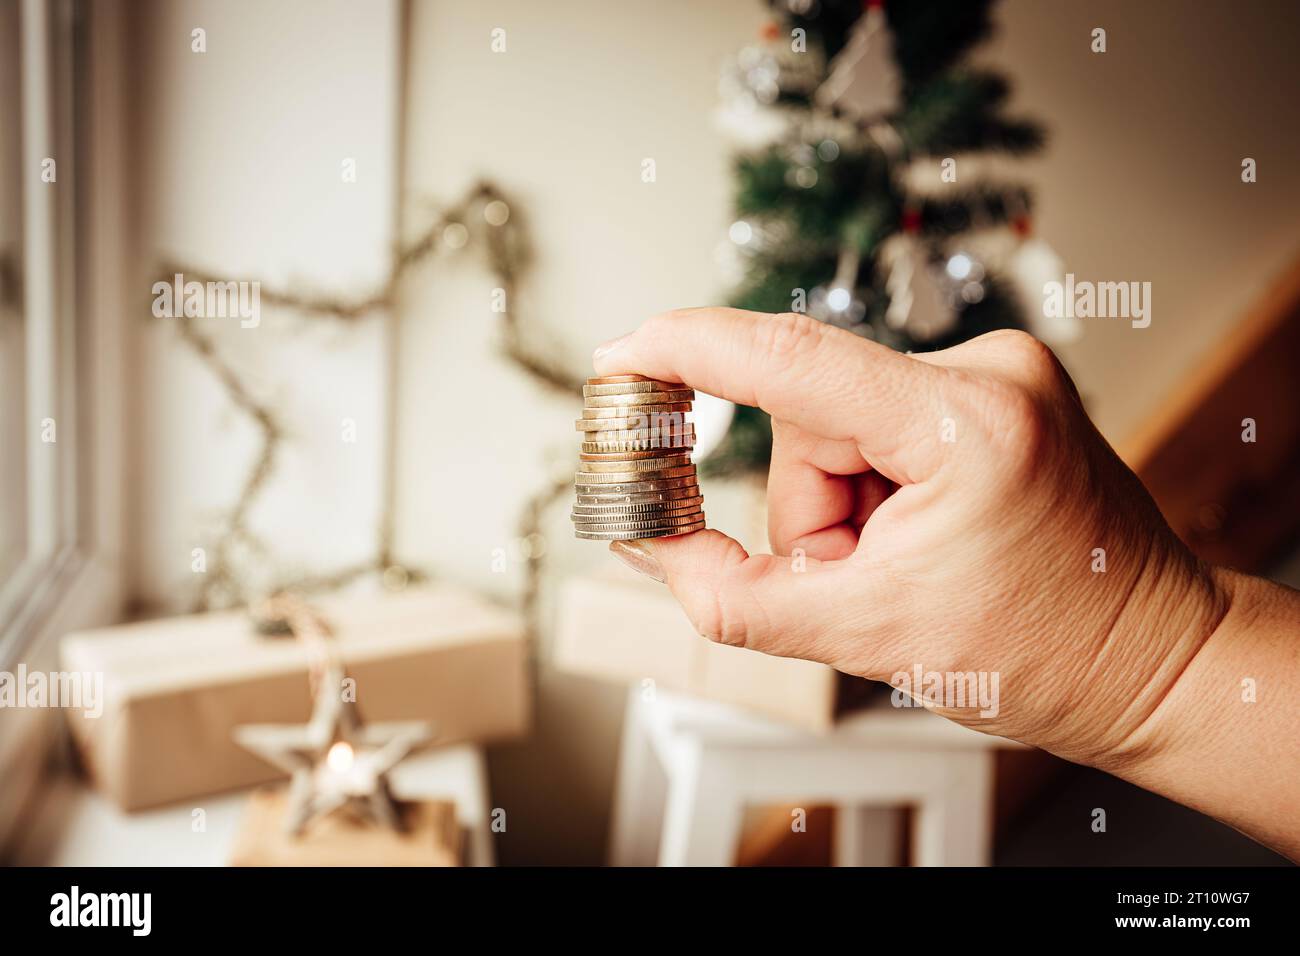 Concept de budget et de finances de Noël. Main de femme tenant de l'argent contre l'arbre de Noël et des ornements à la maison. Banque D'Images